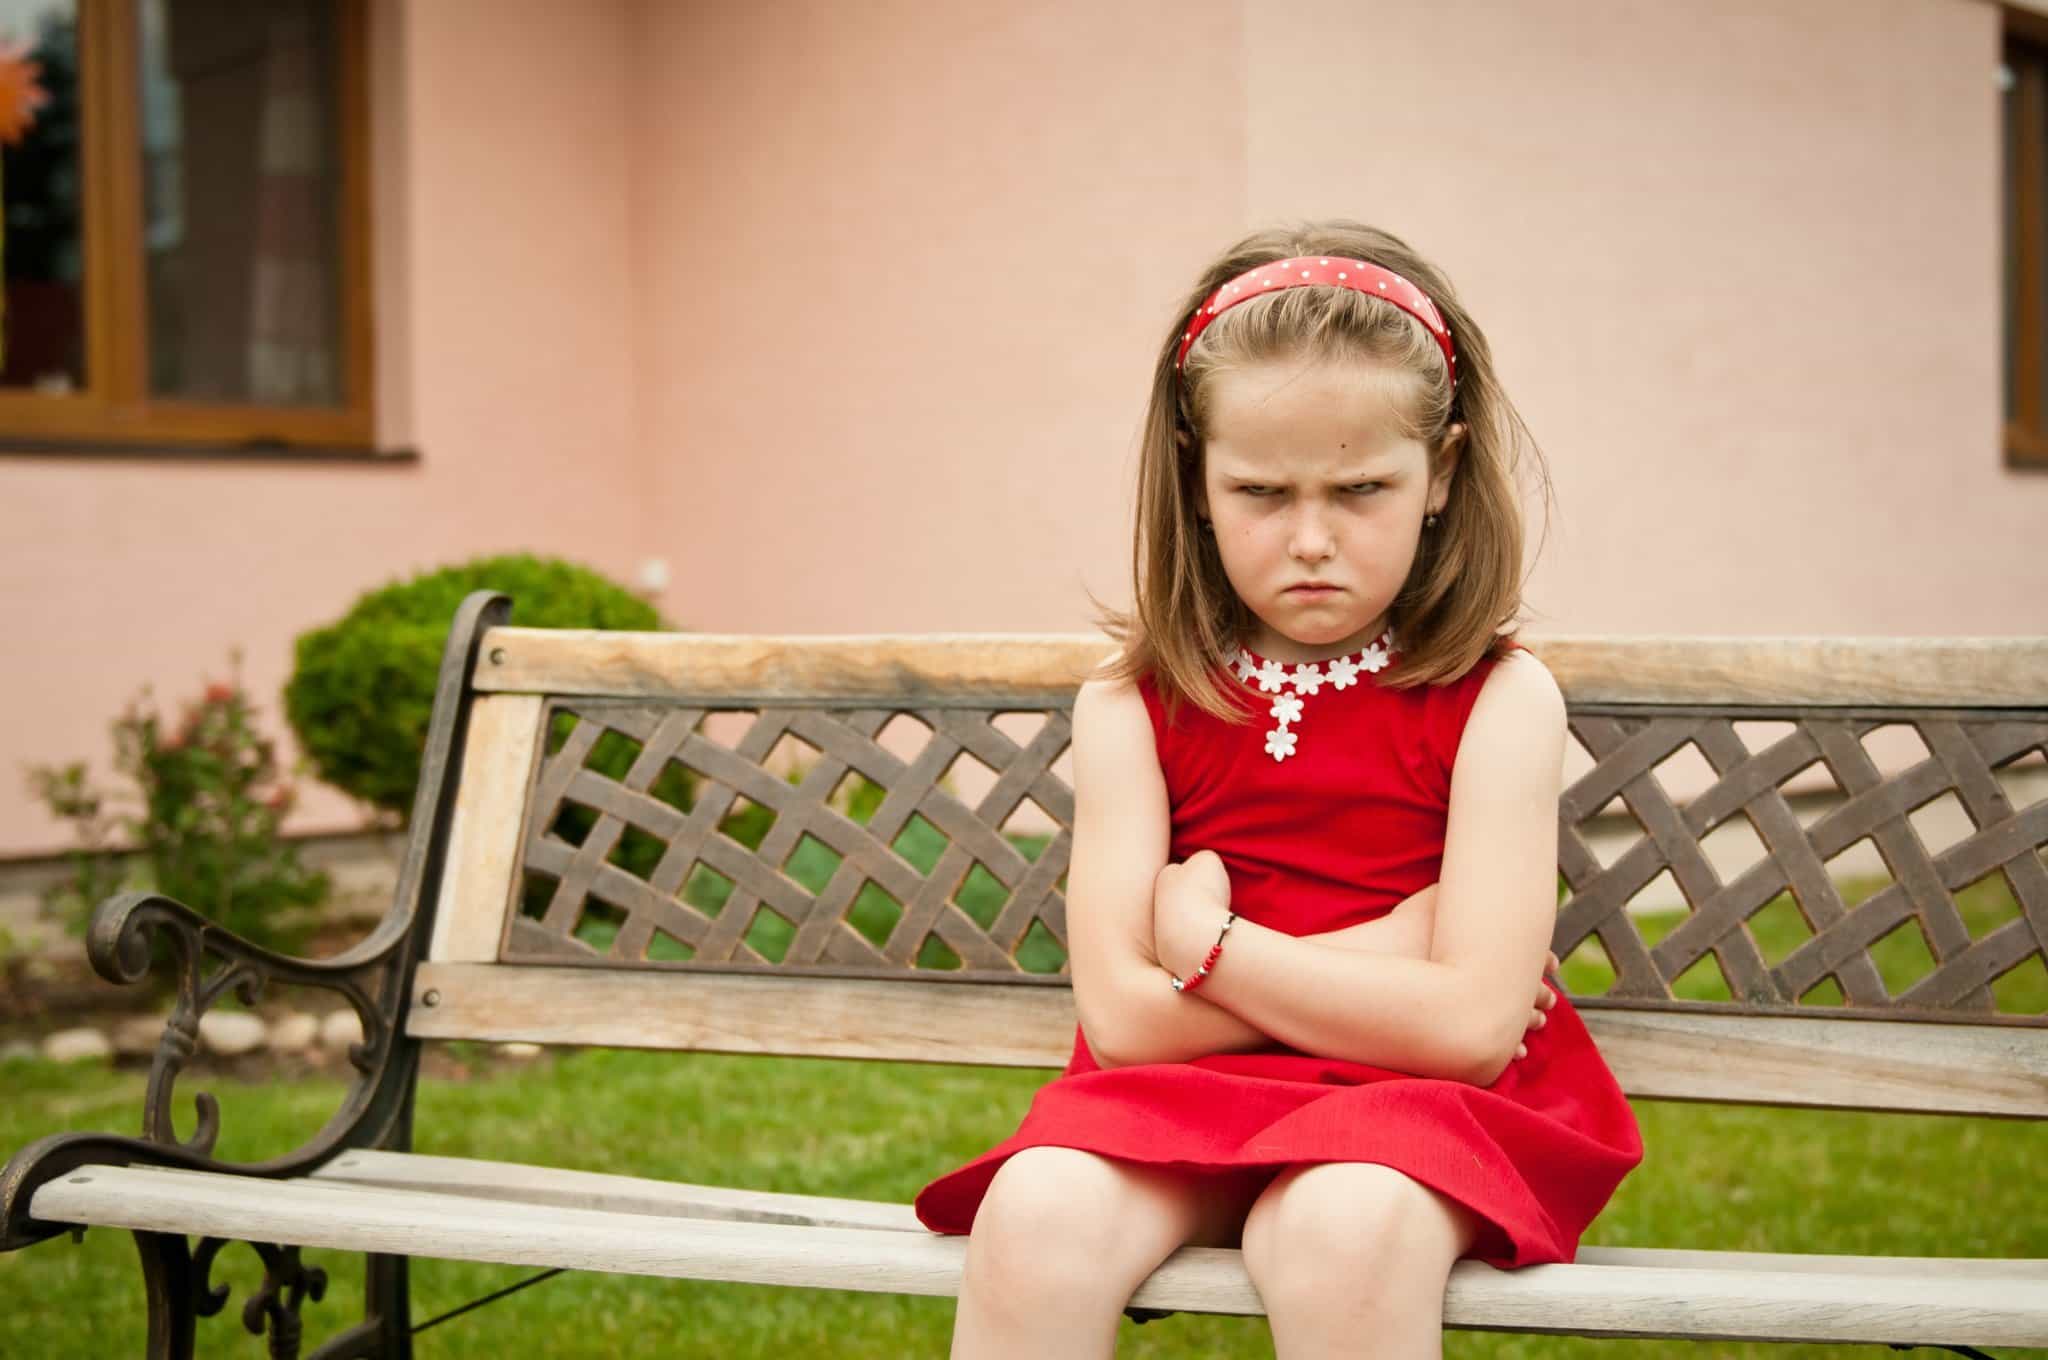 Mengenali Gangguan Perilaku pada Anak, Ciri-Ciri dan Penanganannya